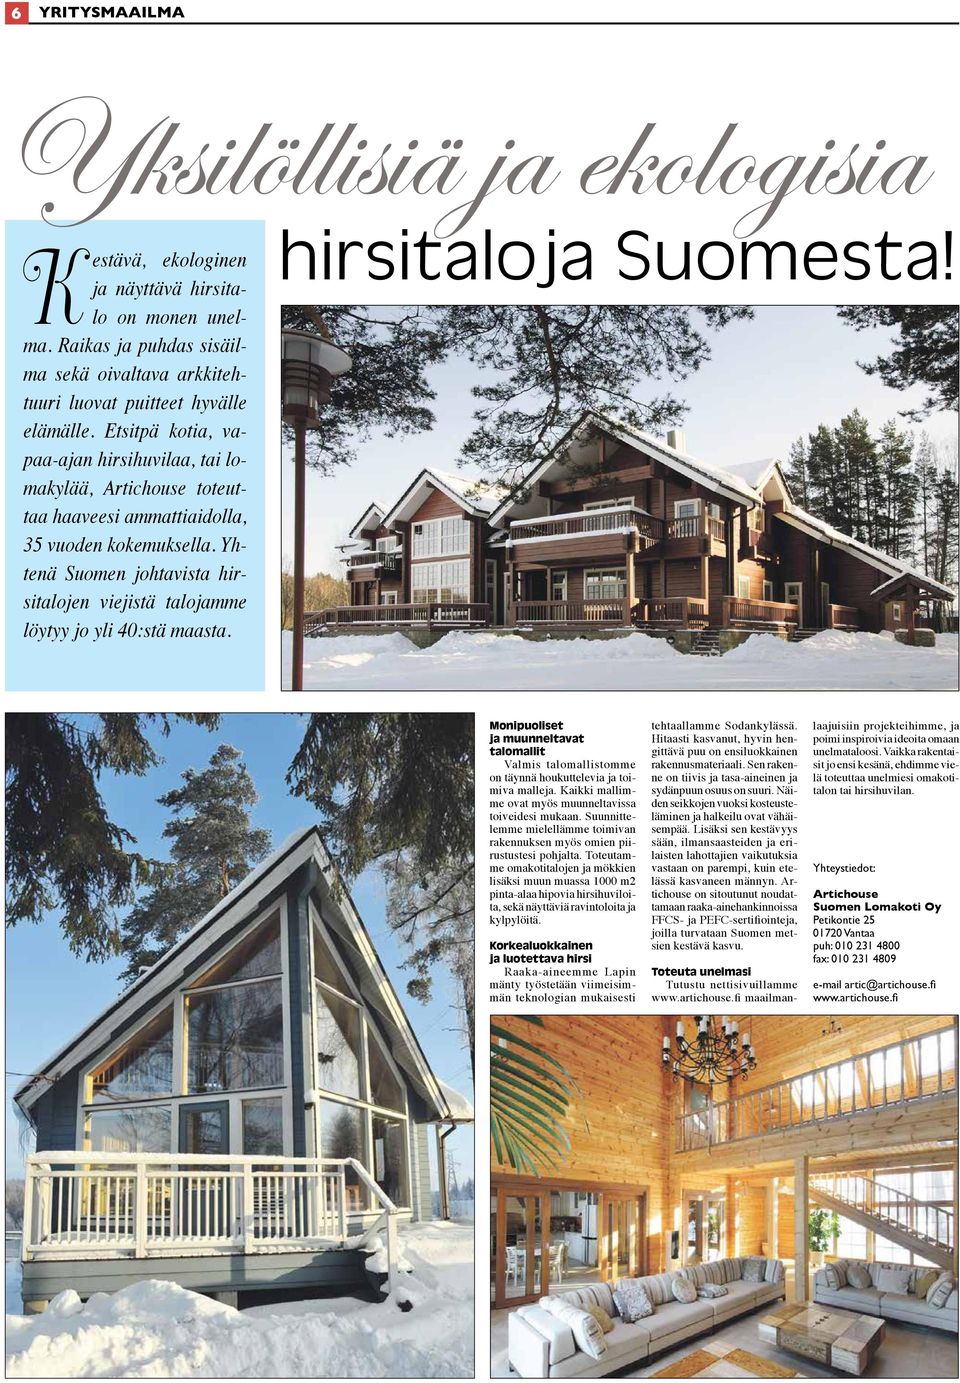 Yhtenä Suomen johtavista hirsitalojen viejistä talojamme löytyy jo yli 40:stä maasta. hirsitaloja Suomesta!